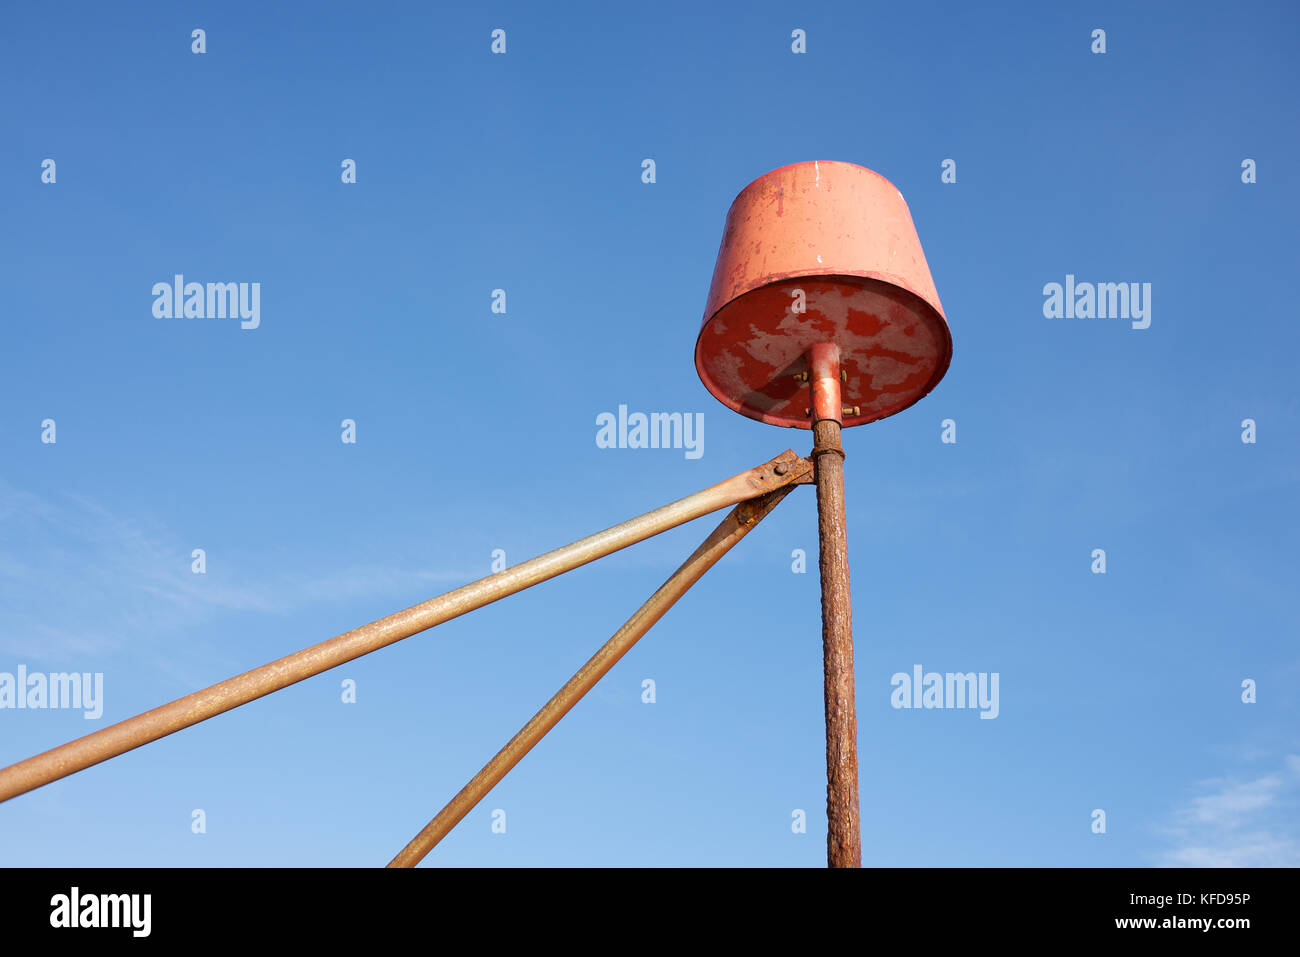 Un objet orange sur un cadre métallique contre un ciel bleu Banque D'Images